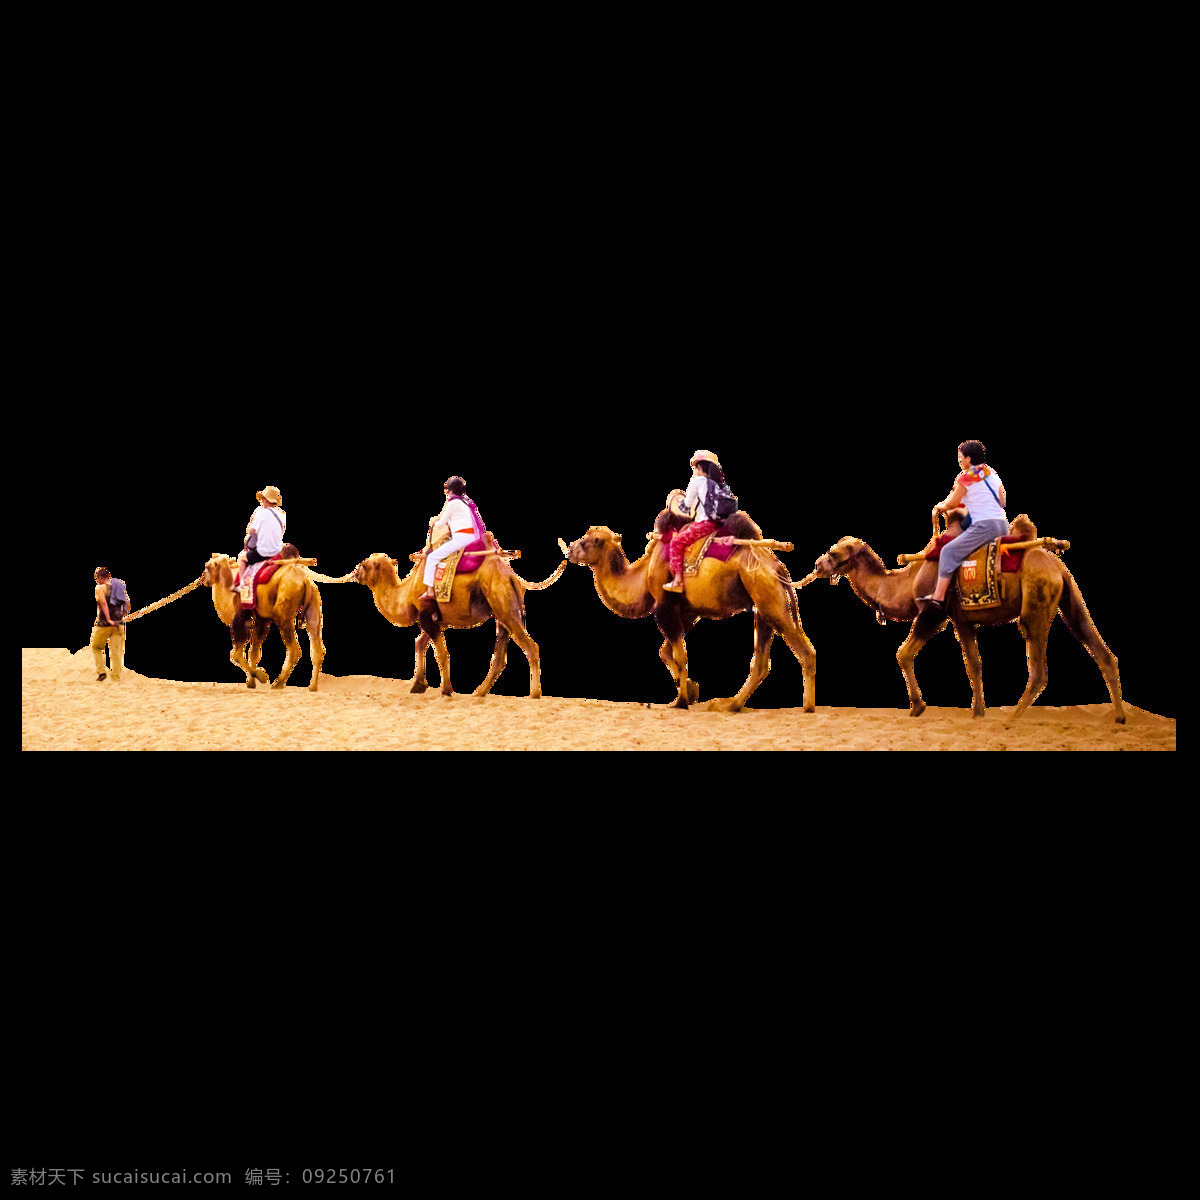 骑 骆驼 人 透明 元素 一群骆驼 一群人骑骆驼 沙漠 一排 排队 骑着骆驼的人